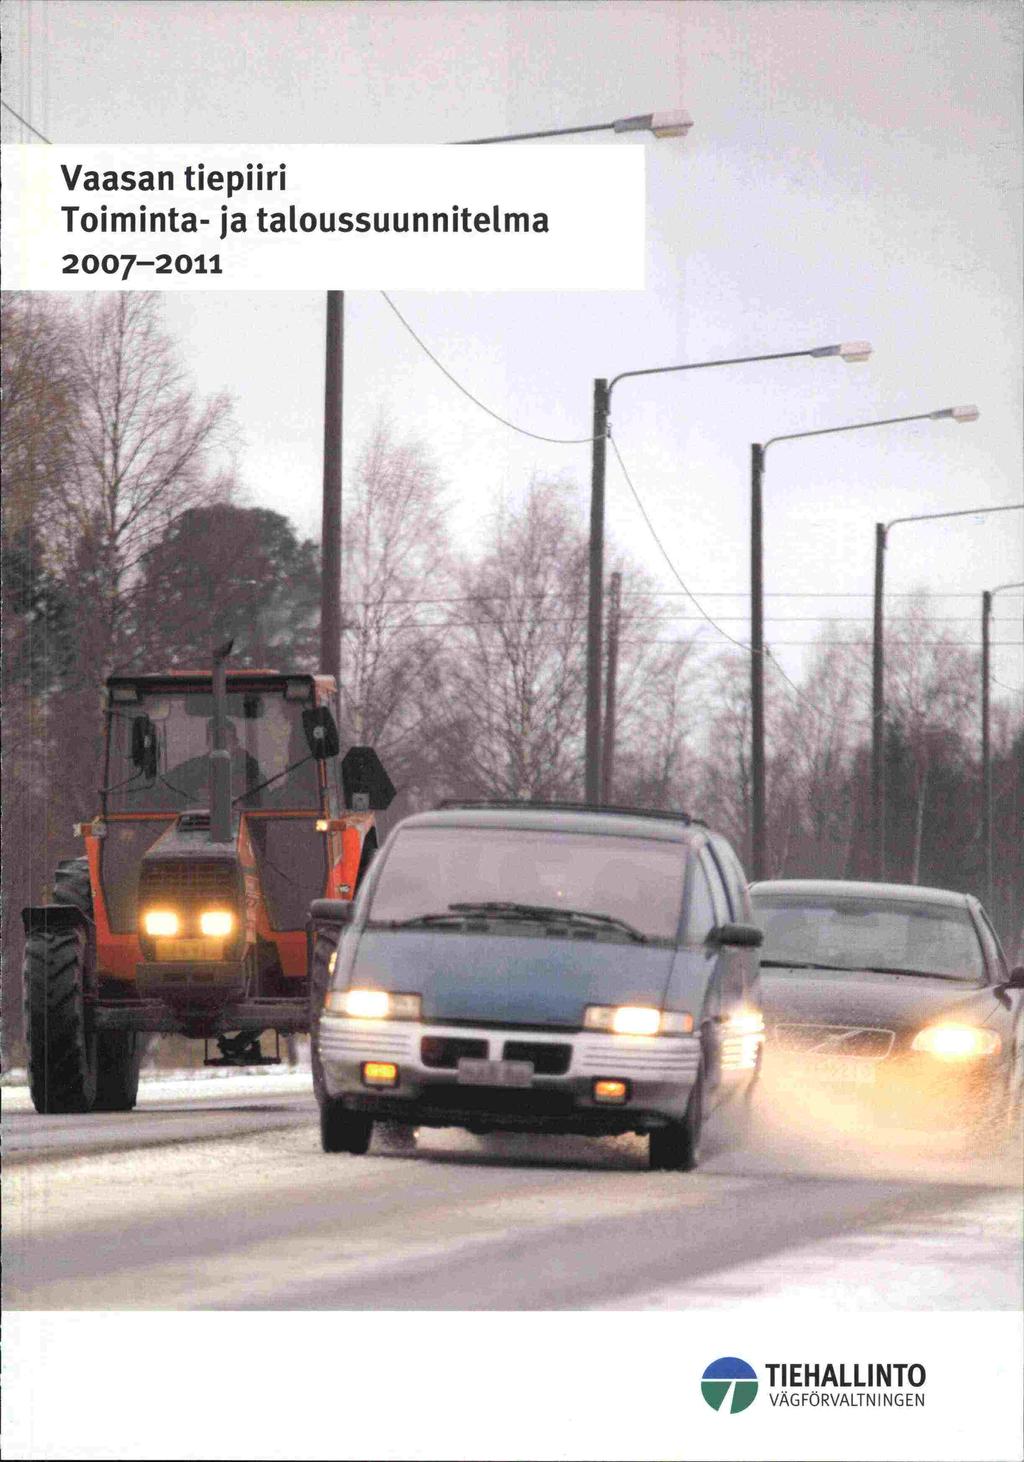 Vaasan tiepiiri Toiminta- ja taloussuunnitelma 2007-2011